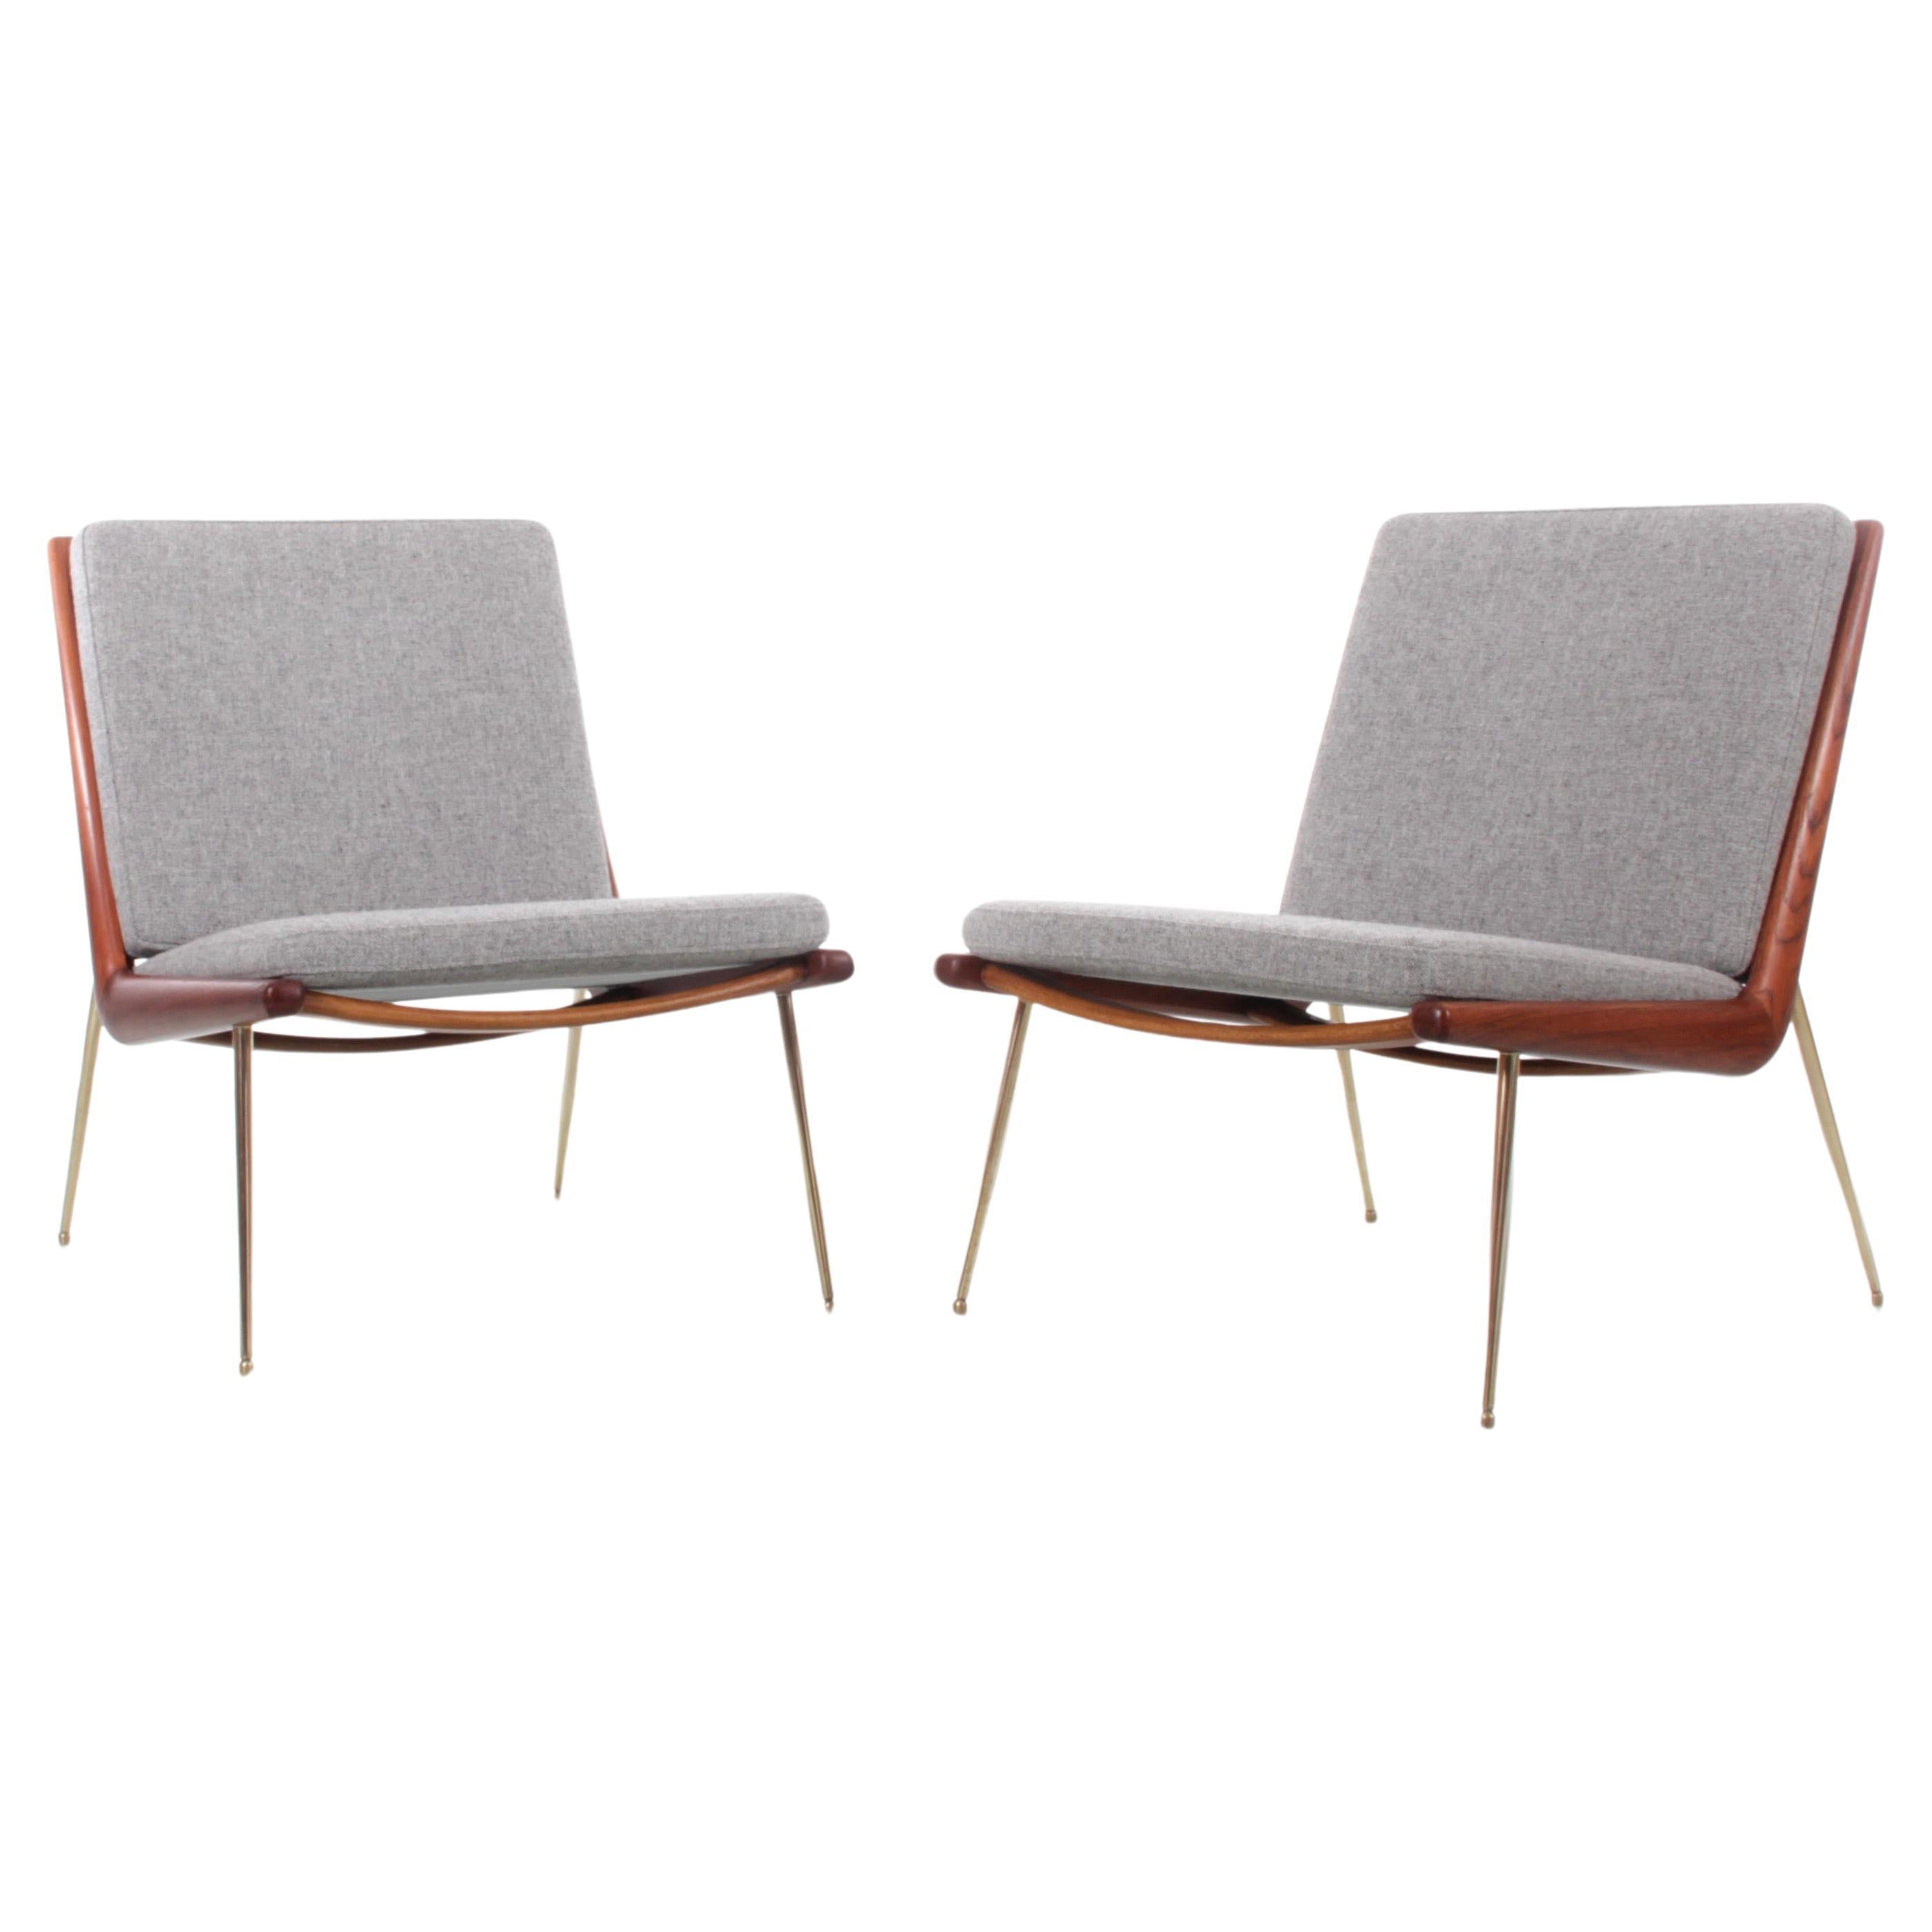 Pair of Scandinavian teak easy chairs Model FD-134 "Boomerang" by Peter Hvidt. For Sale